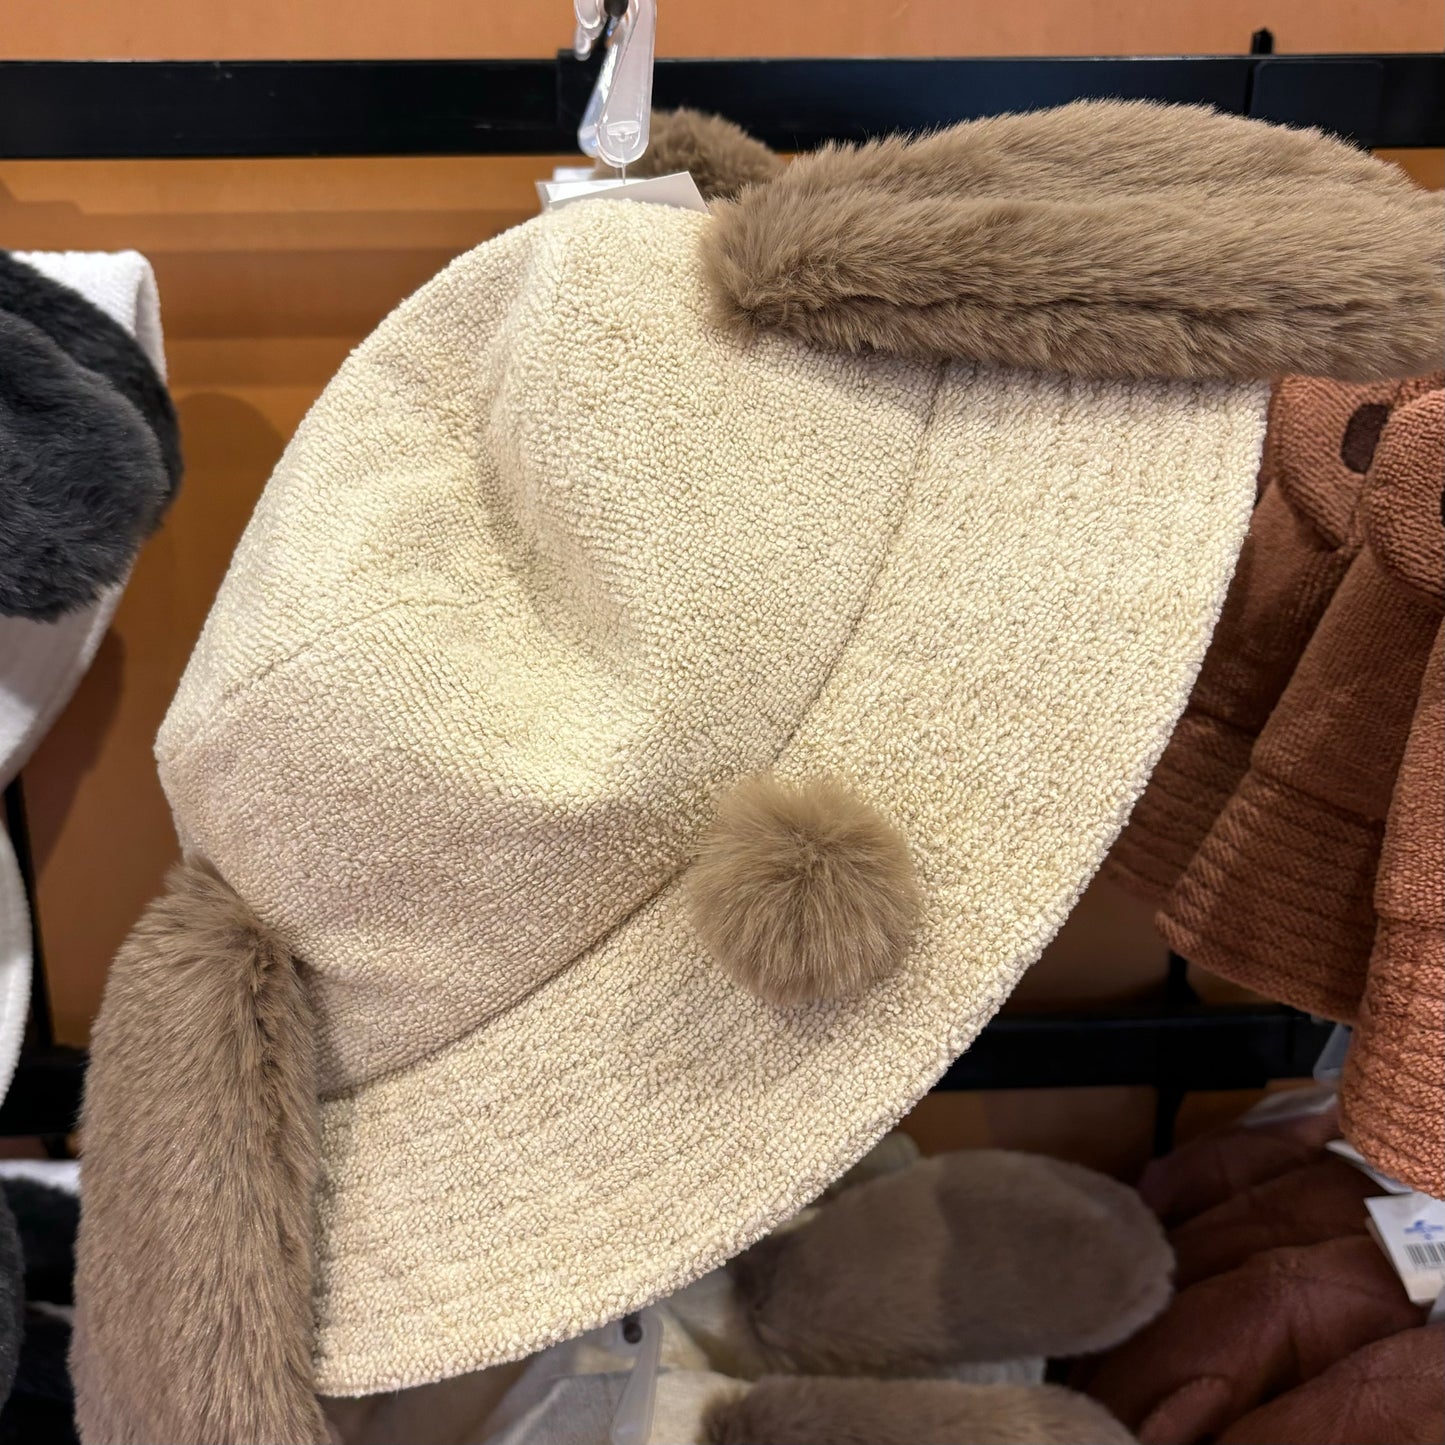 【訂貨】USJ Snoopy 毛巾質料漁夫帽